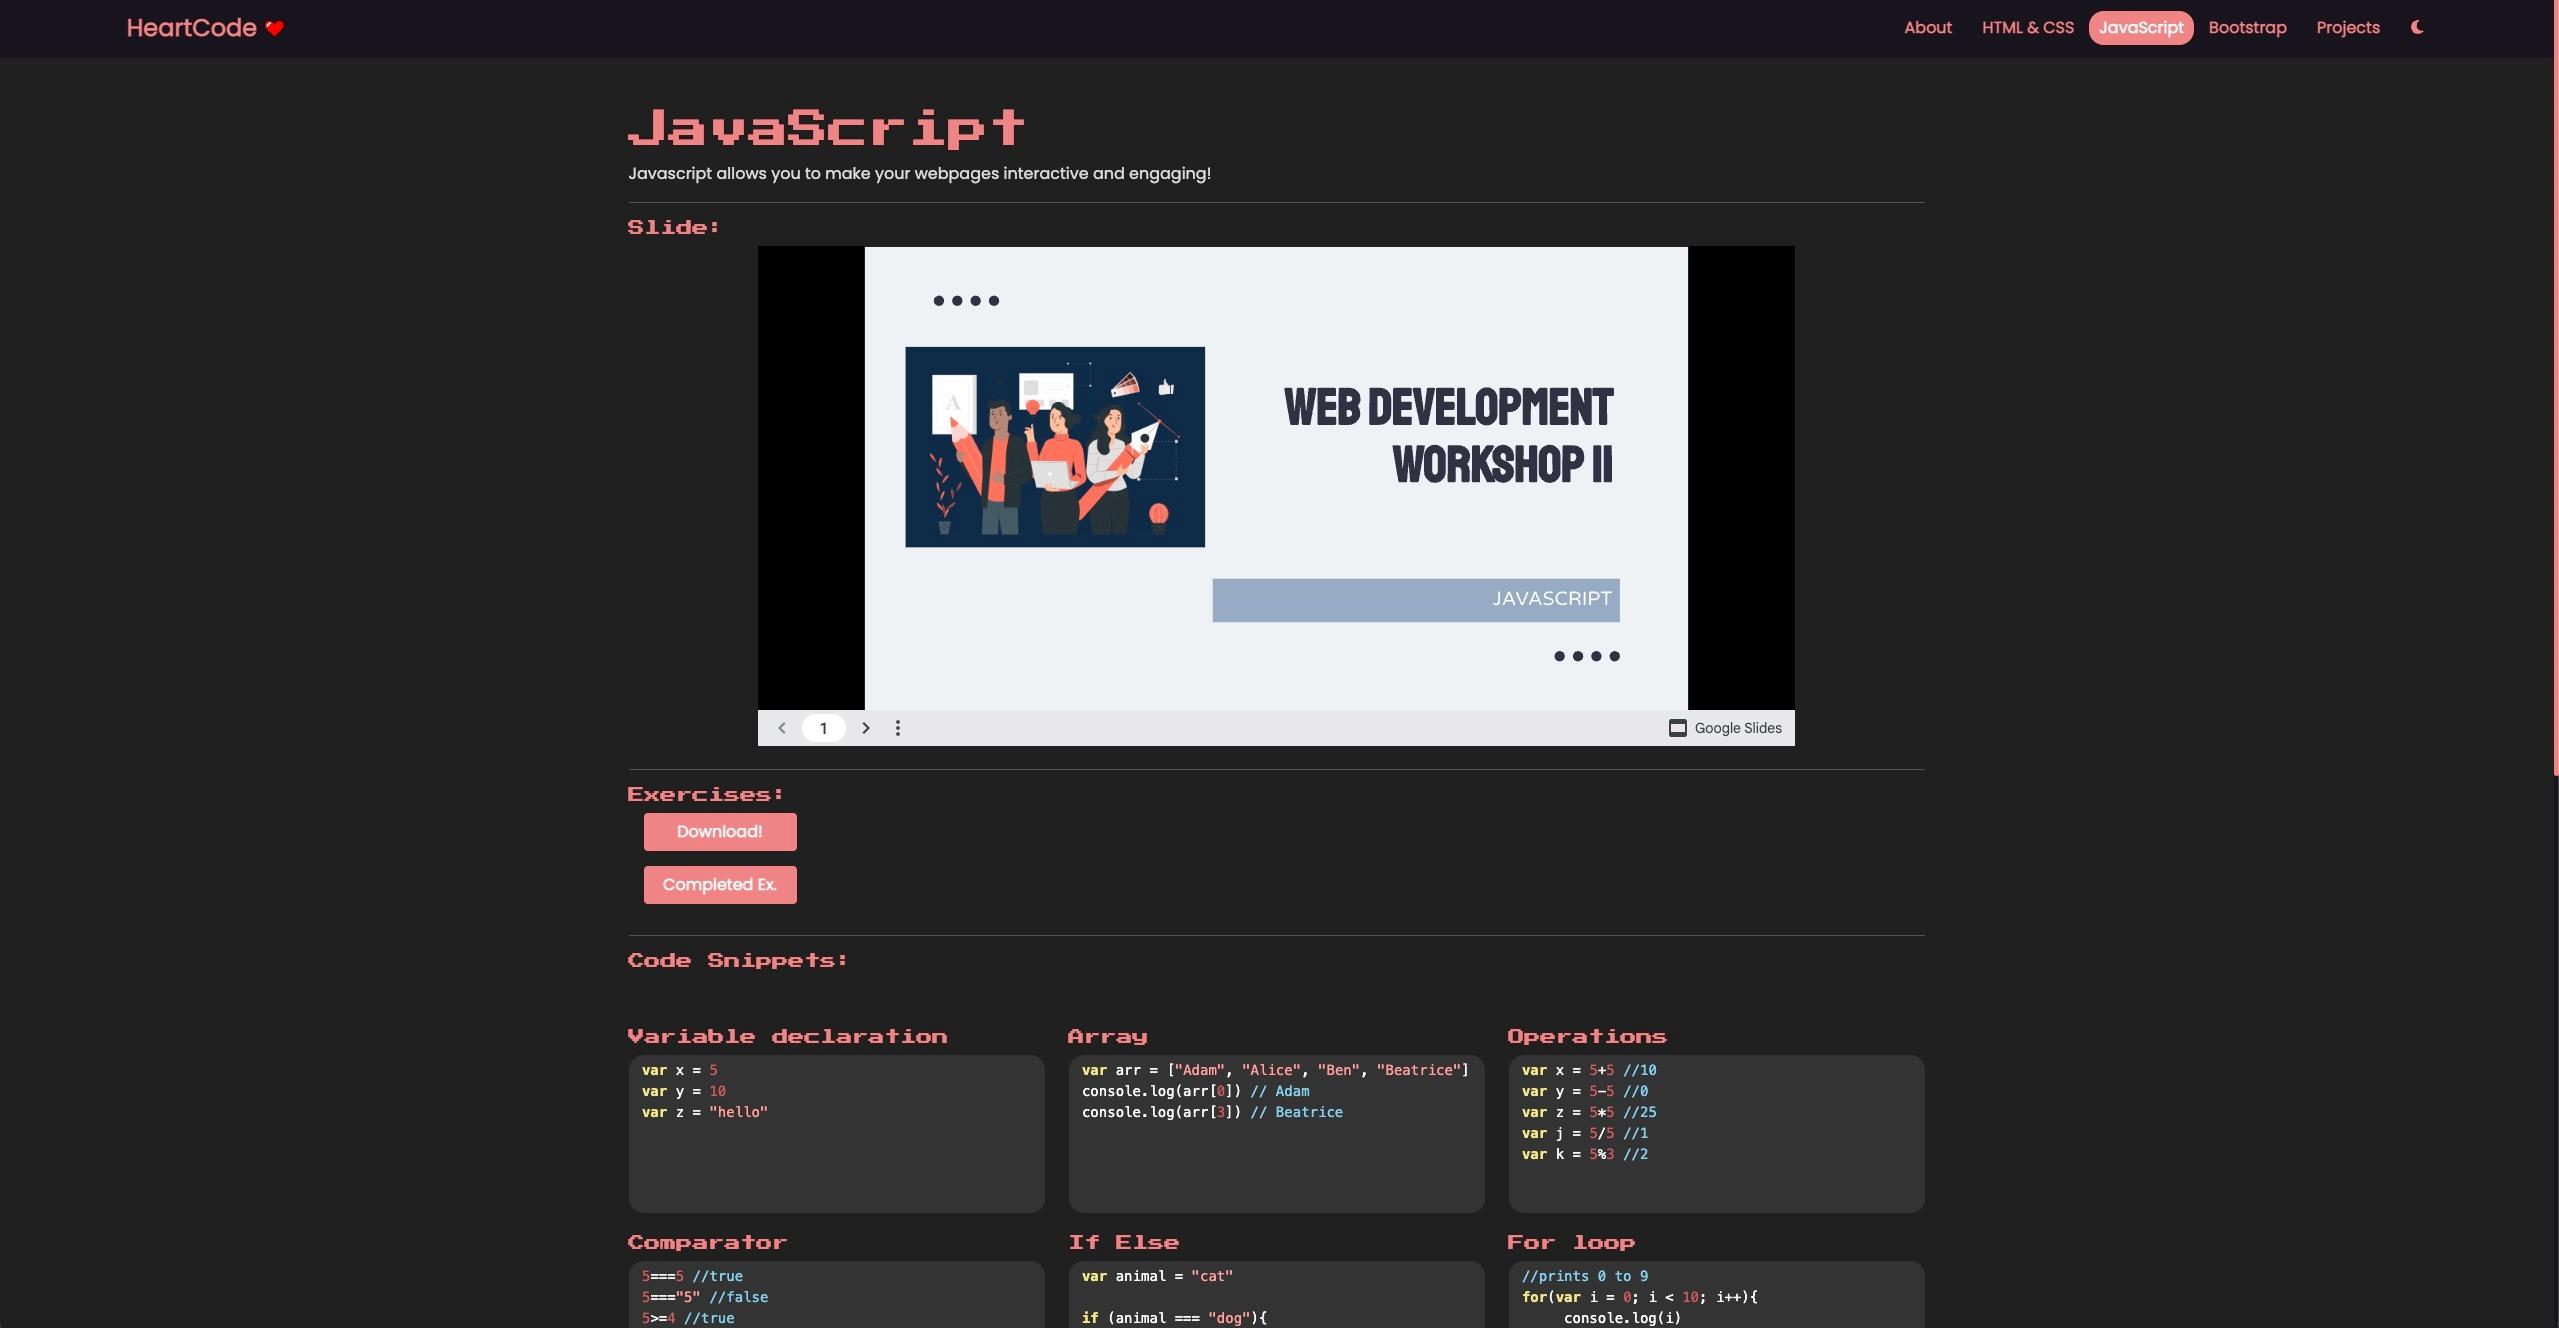 Javascript training page